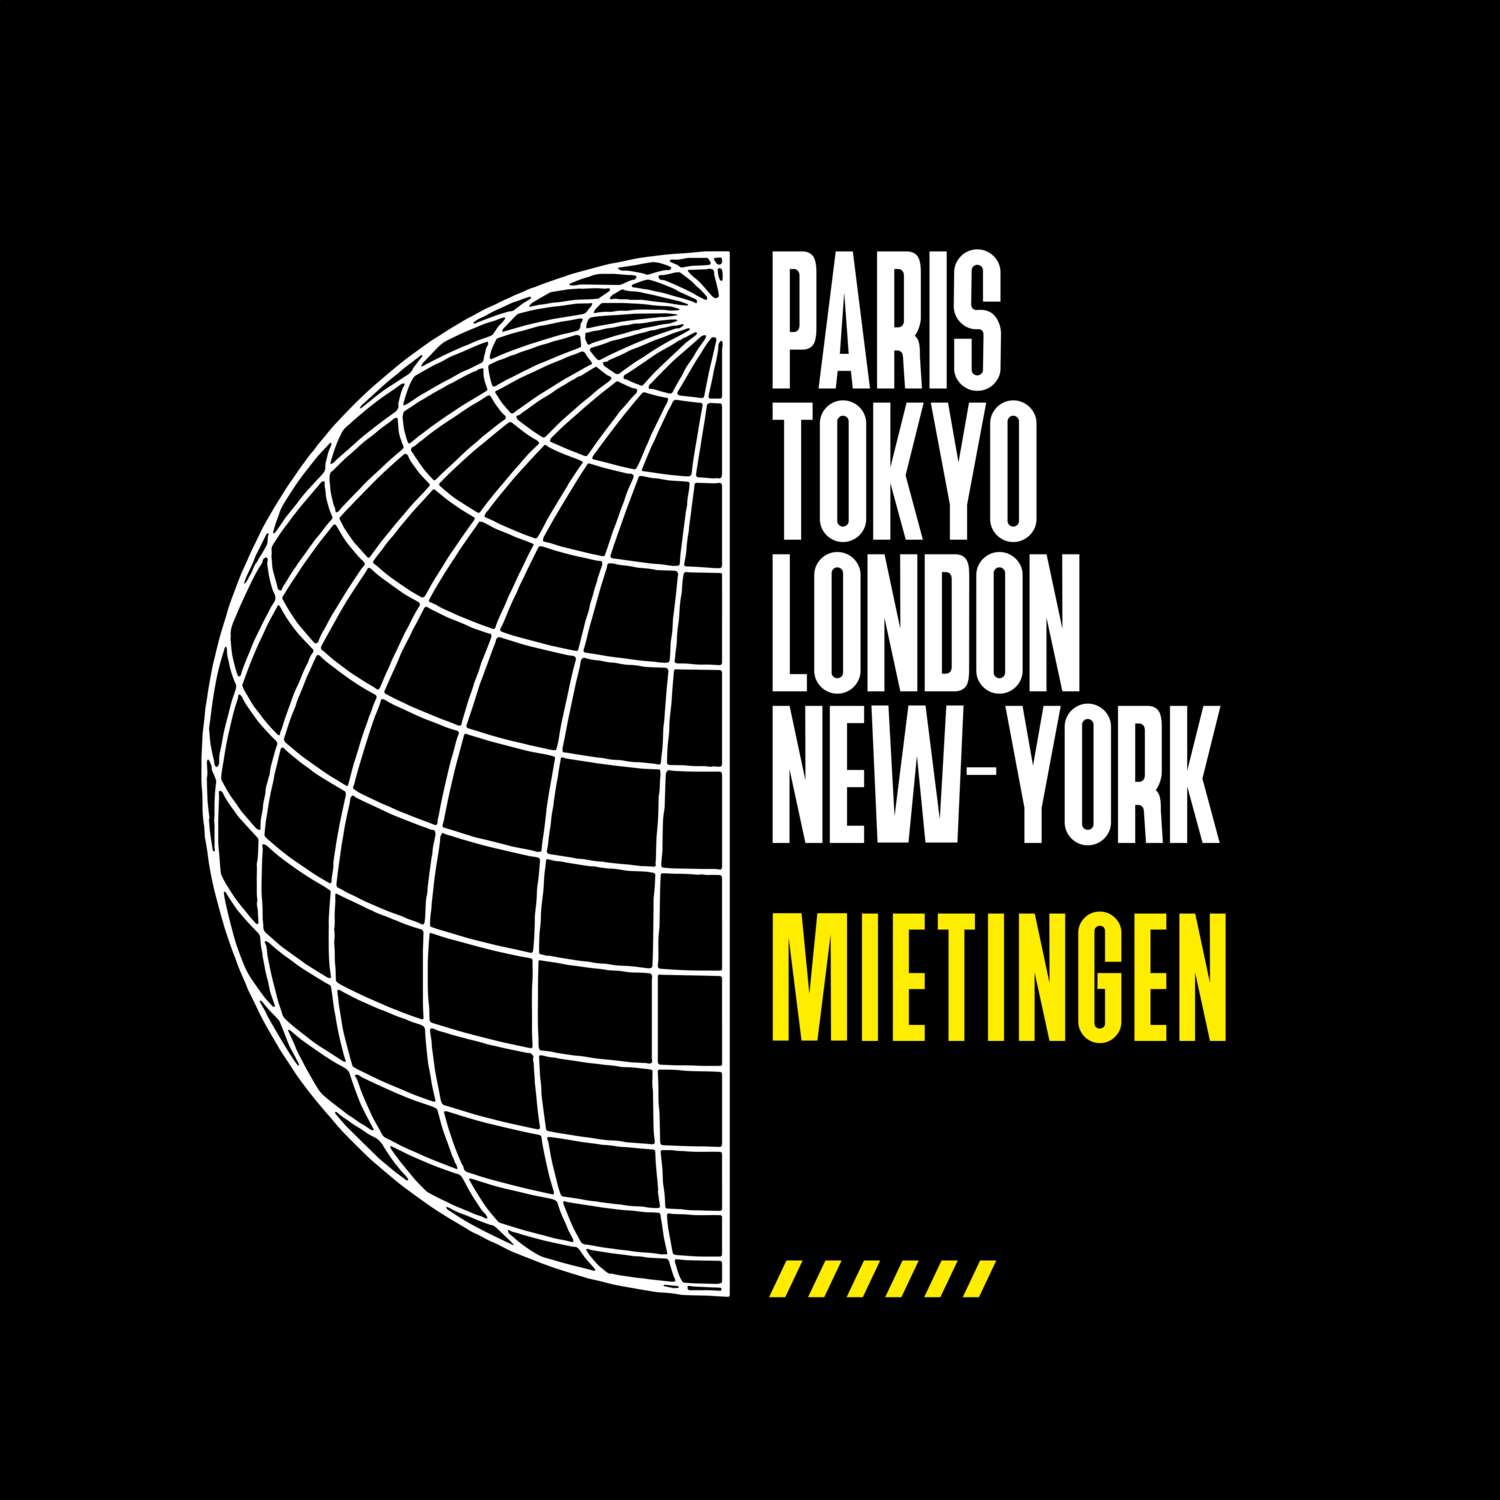 Mietingen T-Shirt »Paris Tokyo London«